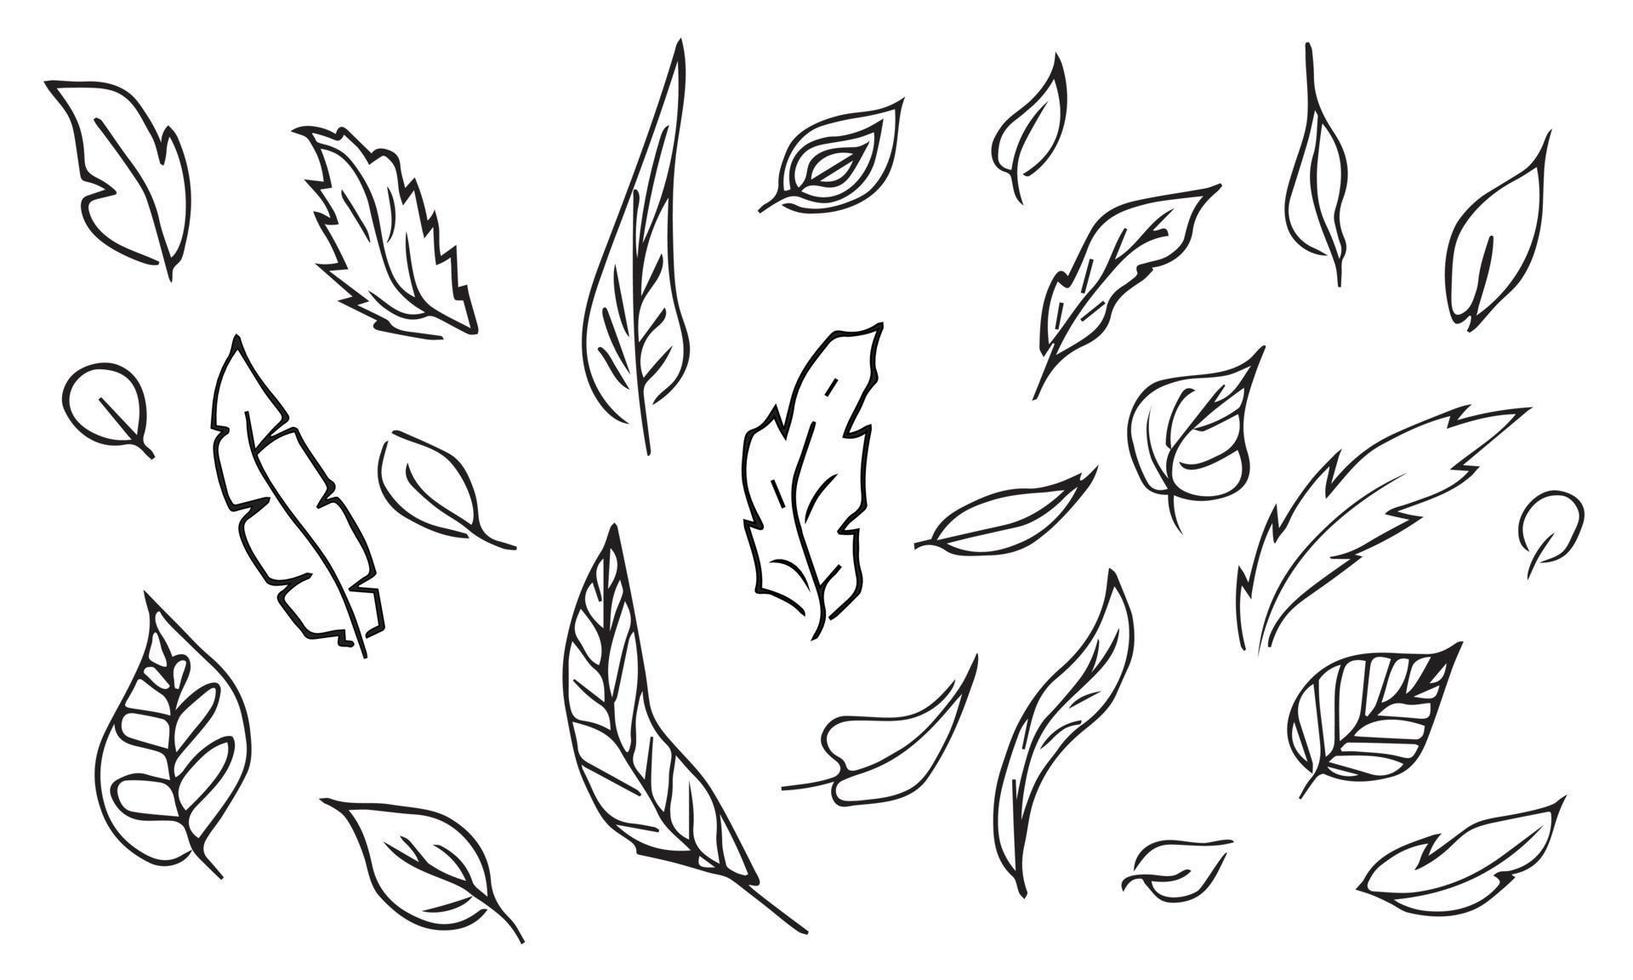 ensemble vectoriel dessiné à la main de branches d'arbres et d'herbes. griffonnages noirs isolés sur fond blanc. illustration botanique pour l'impression, le web, le design, la décoration, le logo.